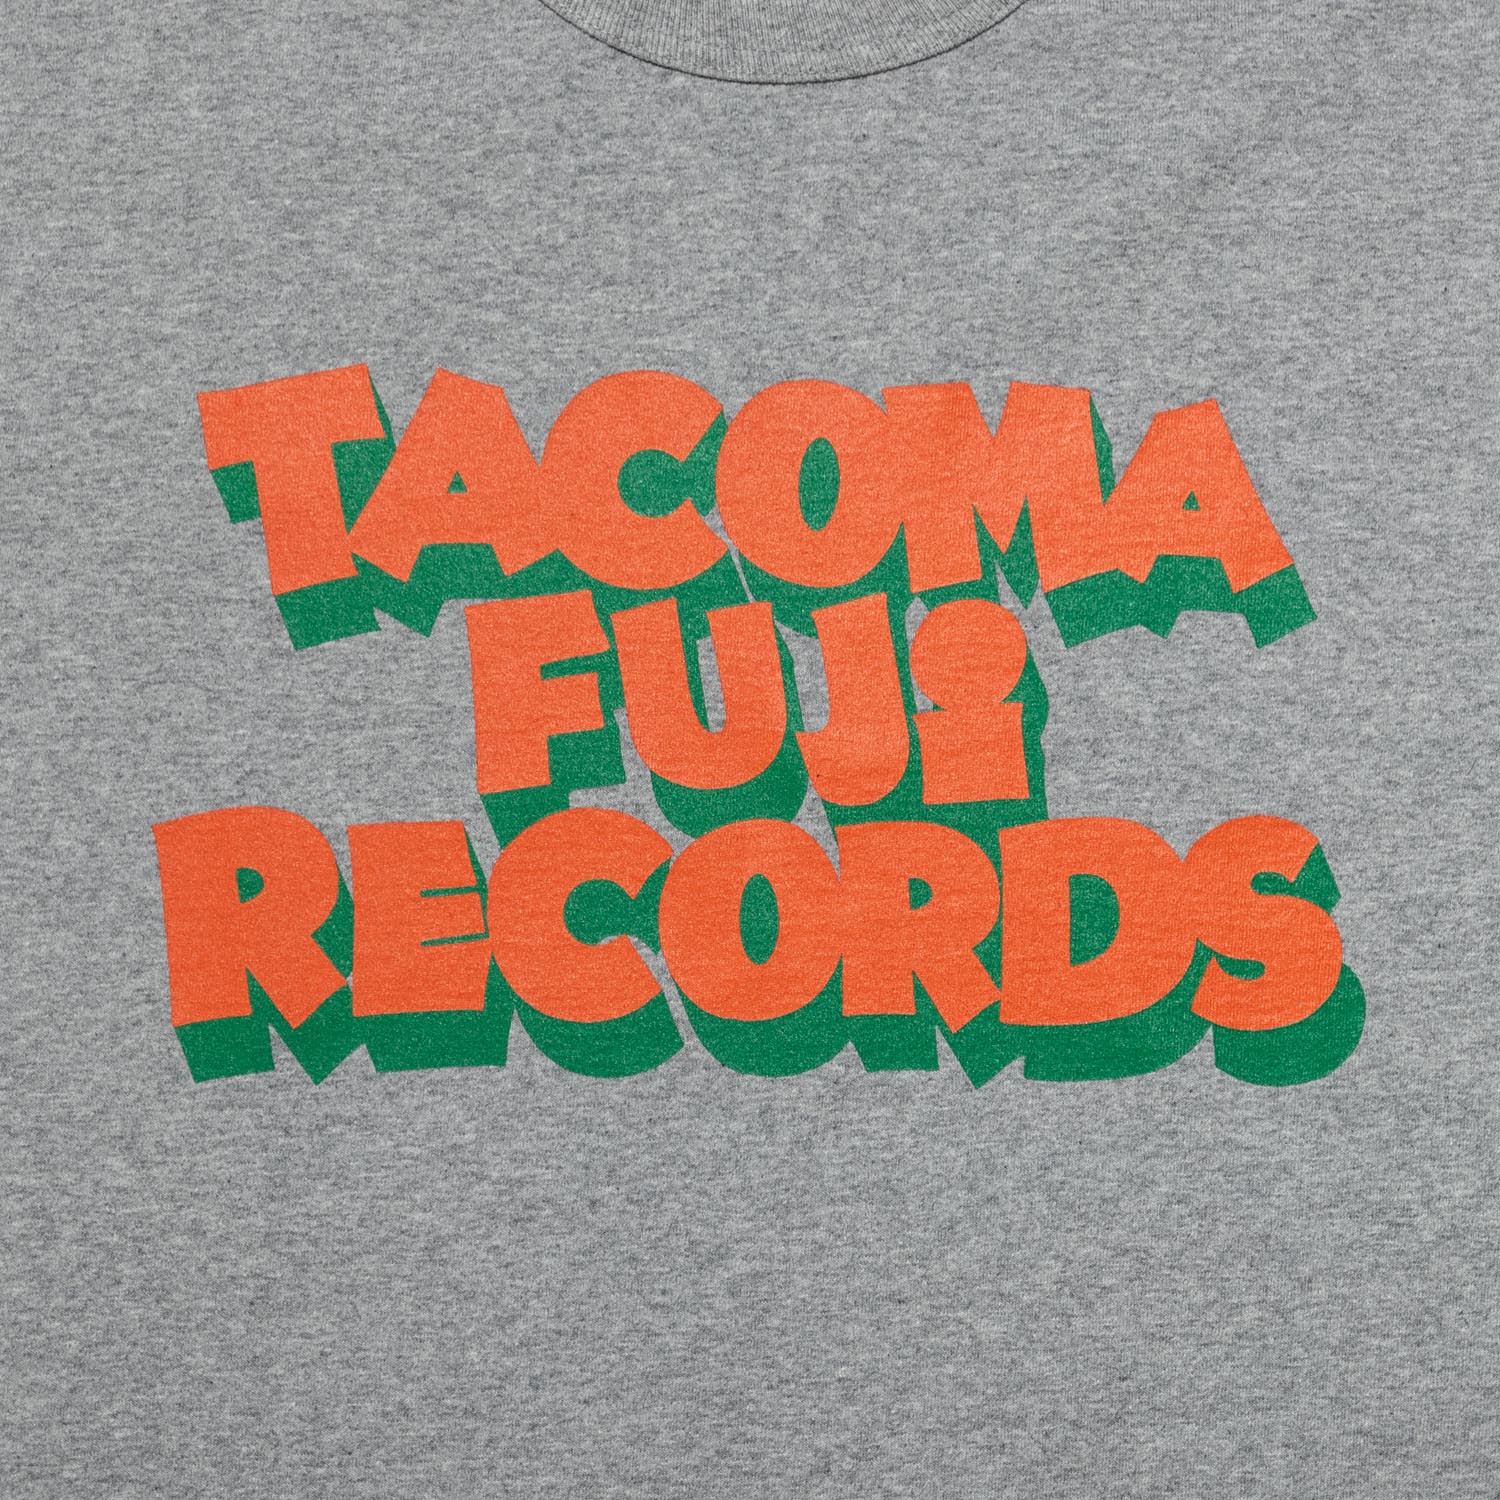 TACOMA FUJI RECORDS (JURASSIC edition) Tee designed by Jerry UKAI